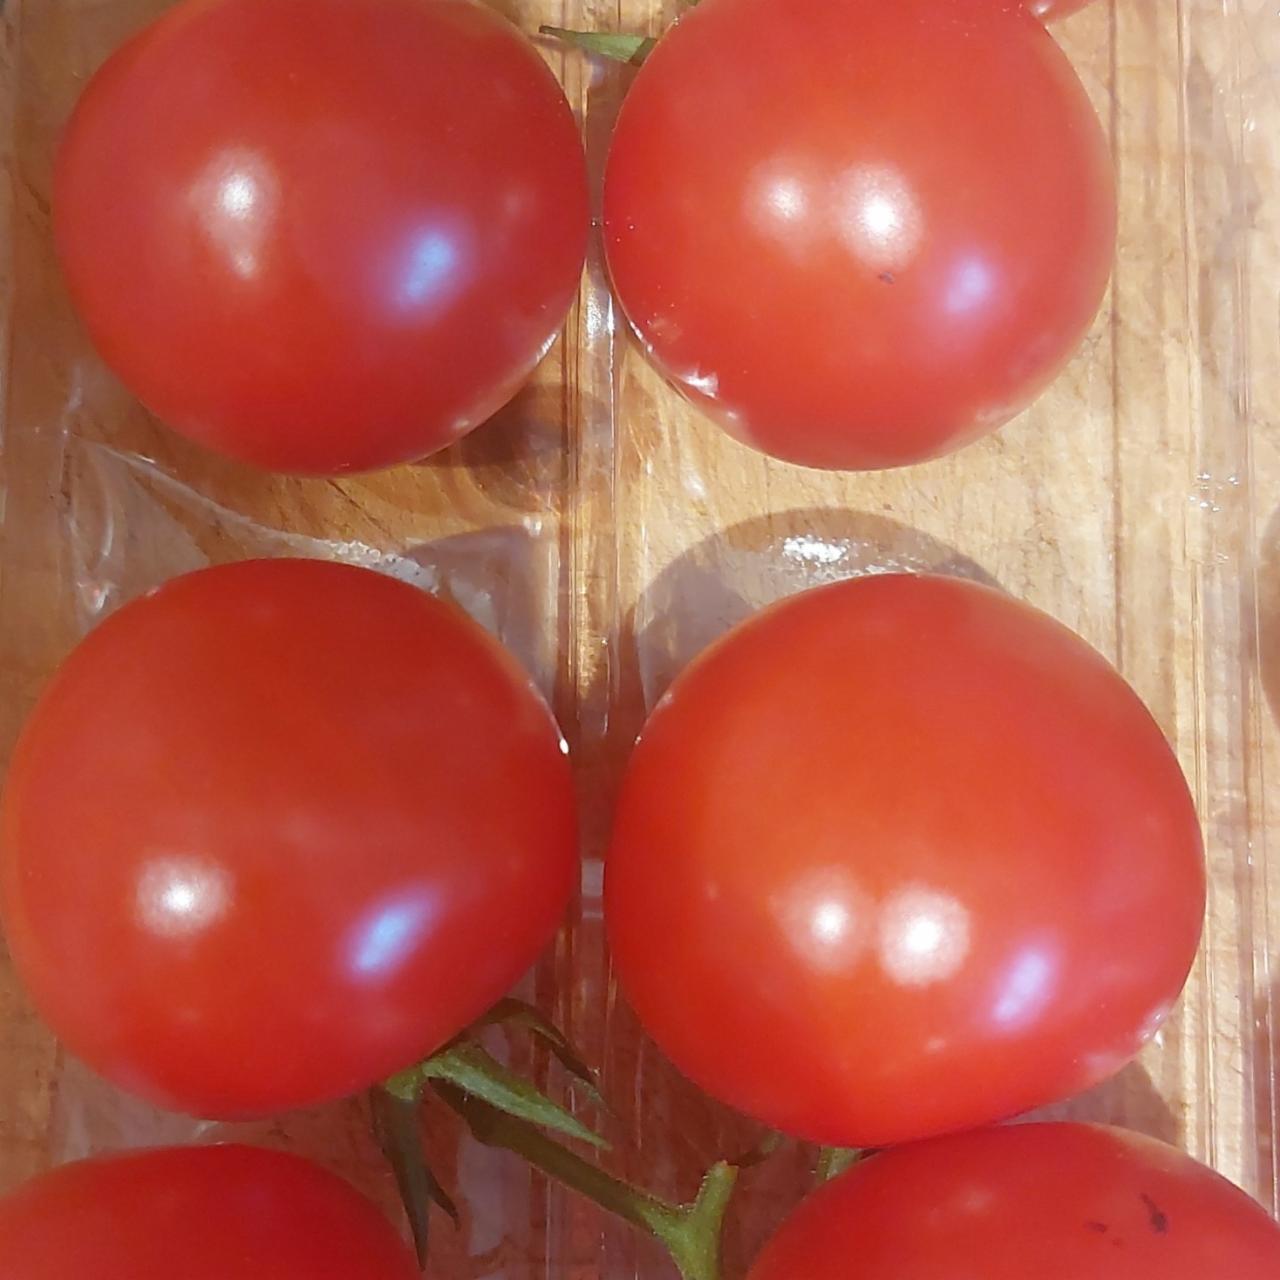 Fotografie - Sweet vine ripened tomatoes Tesco